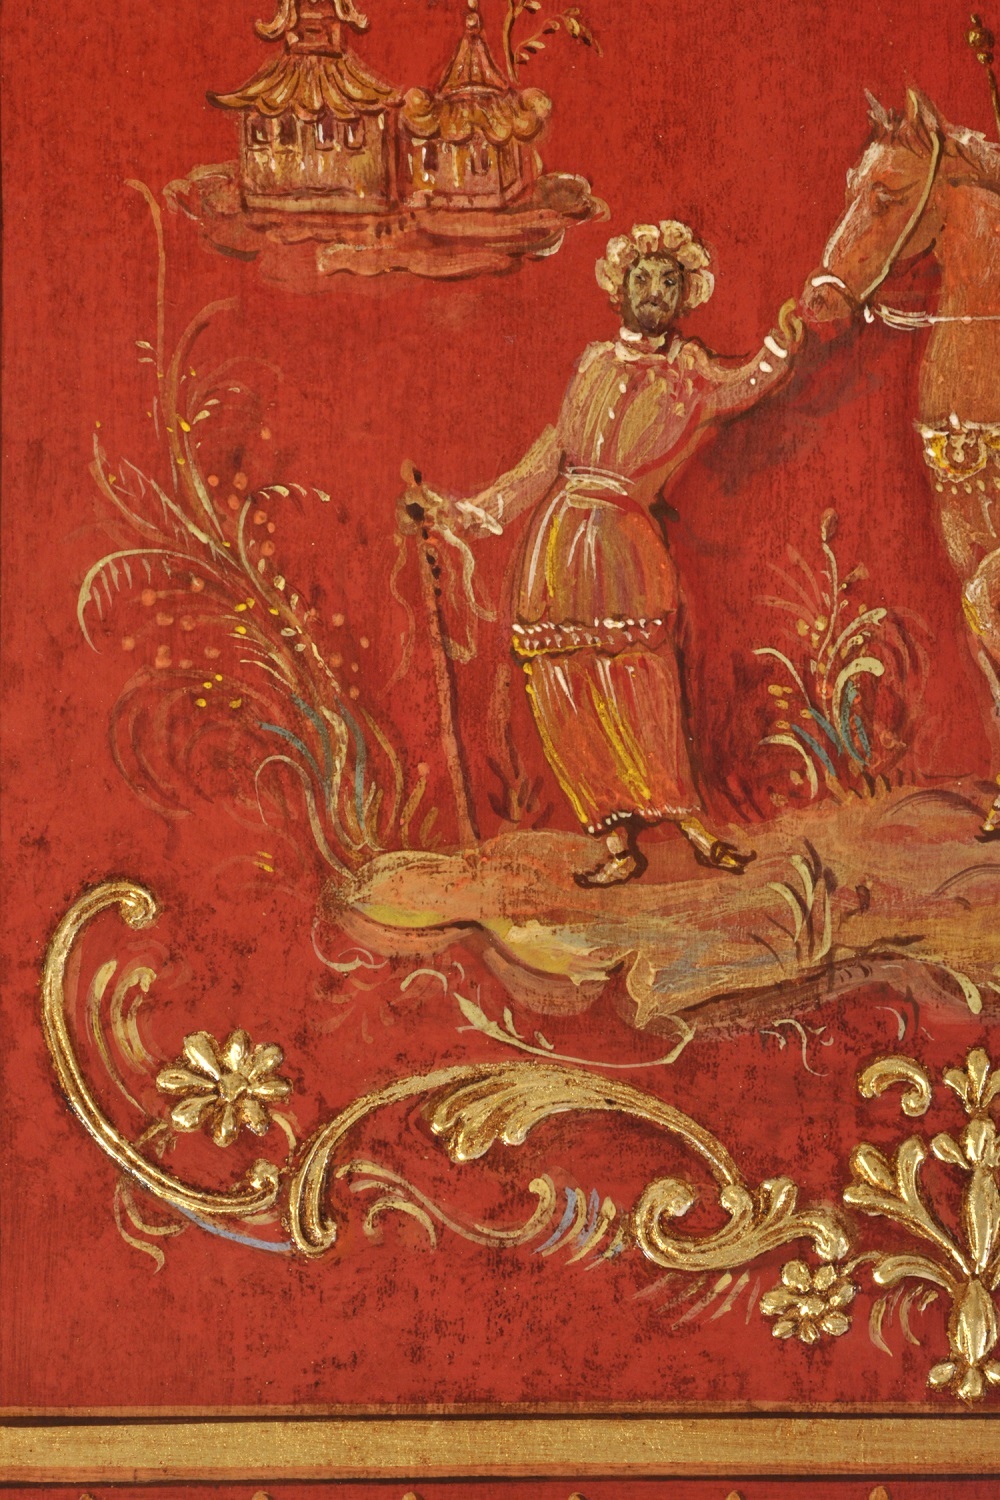 pregiata laccatura a cineserie realizzata su misura di produzione made in italy in stile 600 veneziano decori in pastiglia con soggetti di vita orientale lussuoso riproduzione artigianale del trumeau